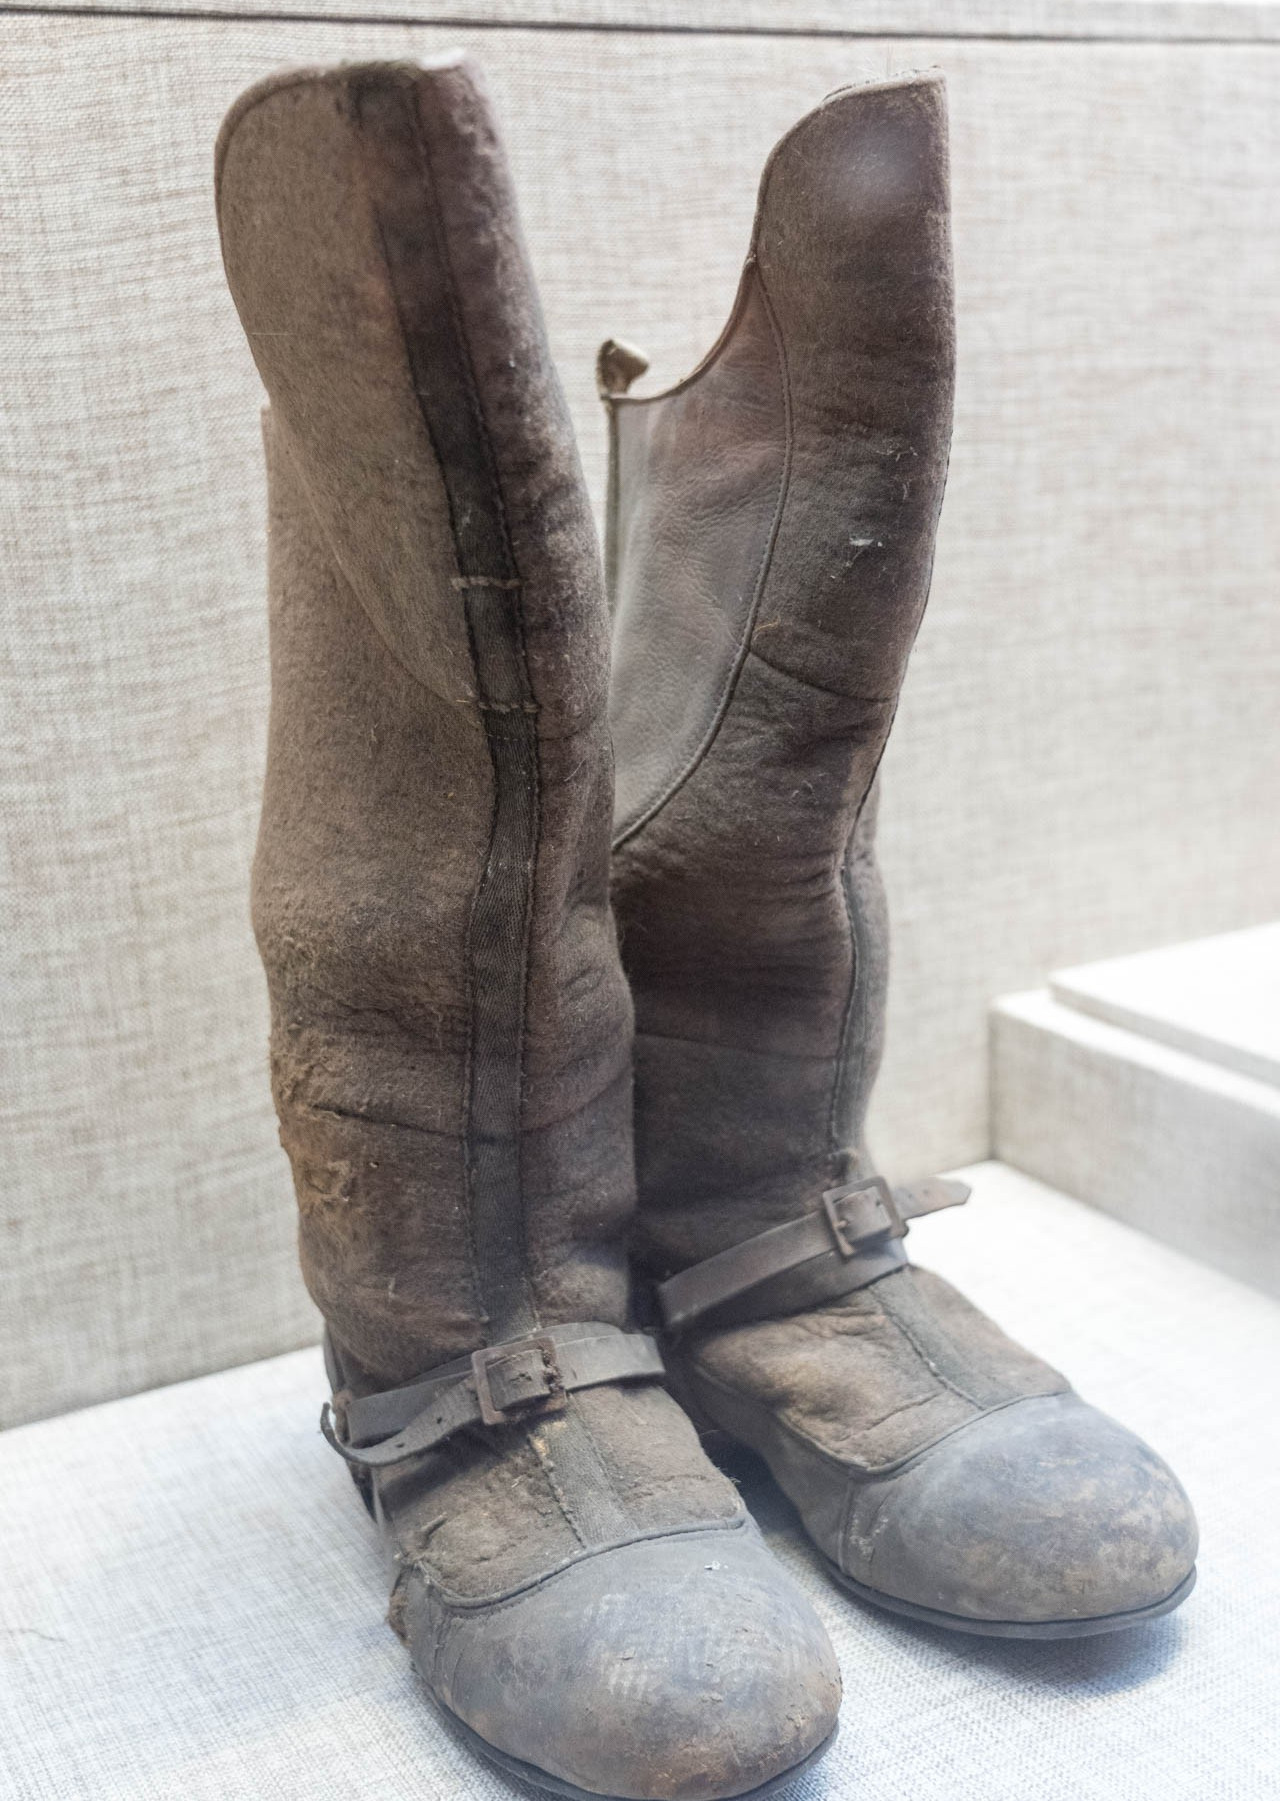 照片中为我国战士缴获的日军的棉马靴,里面毛绒绒的,鞋面是皮质的